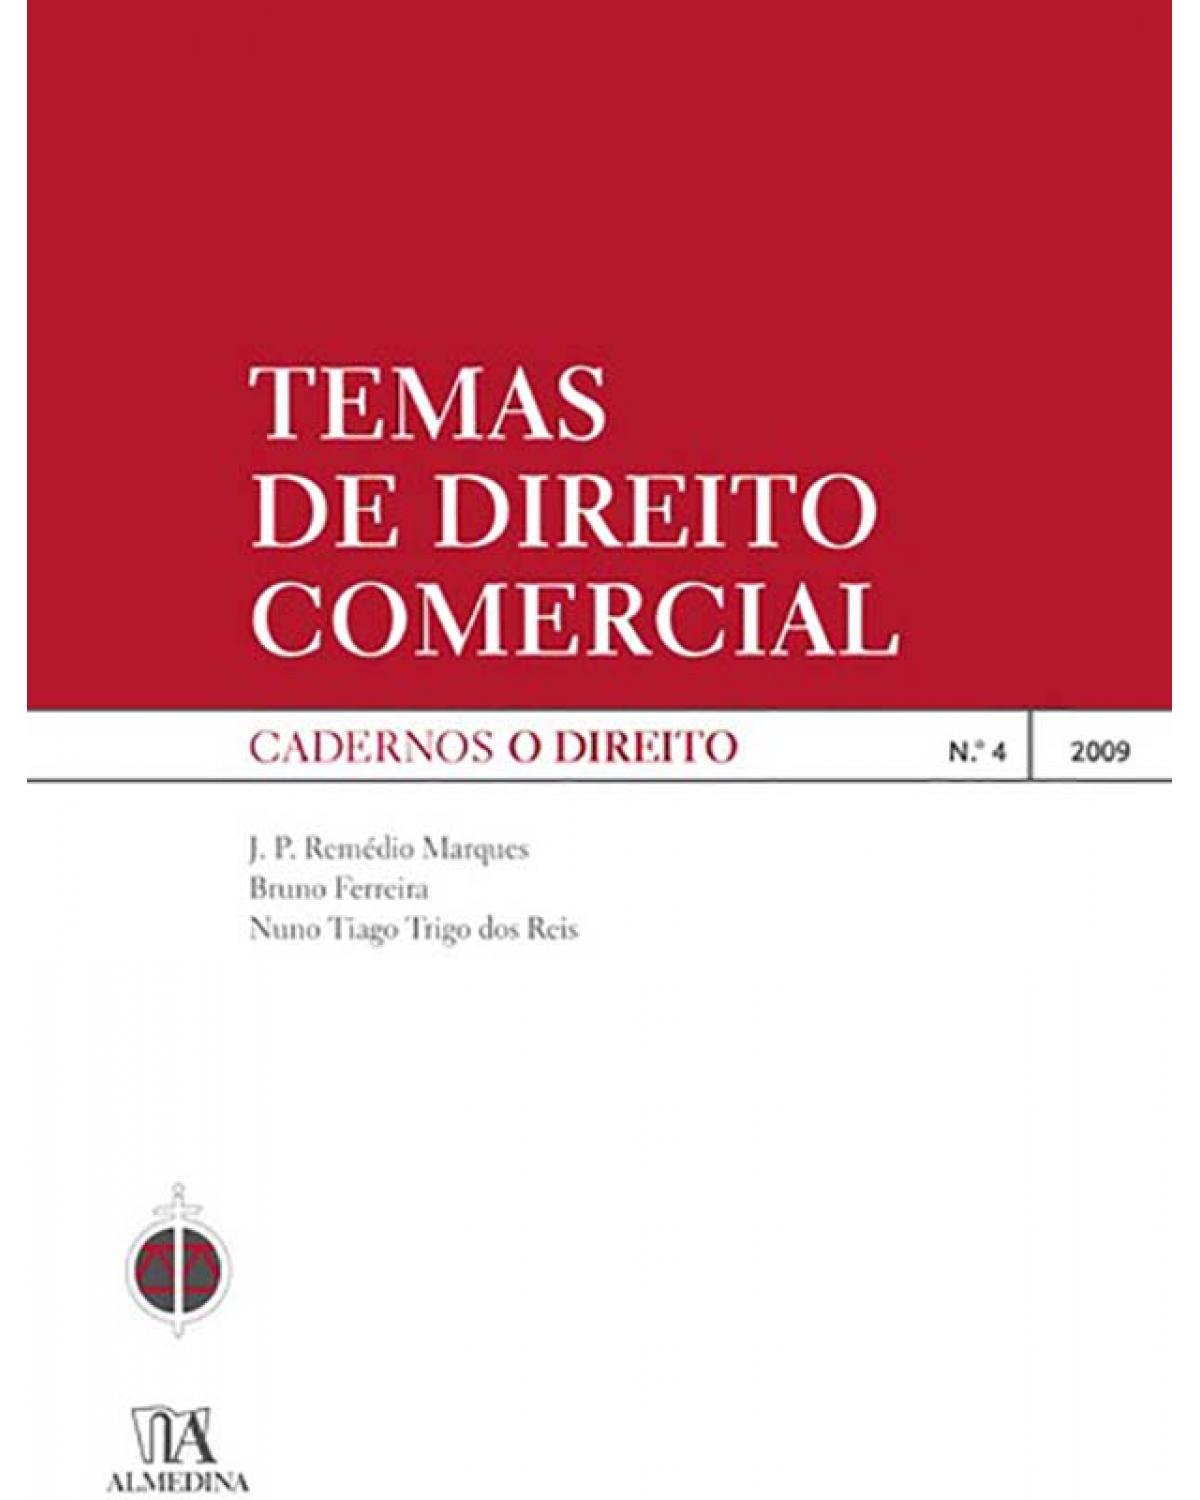 Temas de direito comercial - nº 4 - 2009 - 1ª Edição | 2009